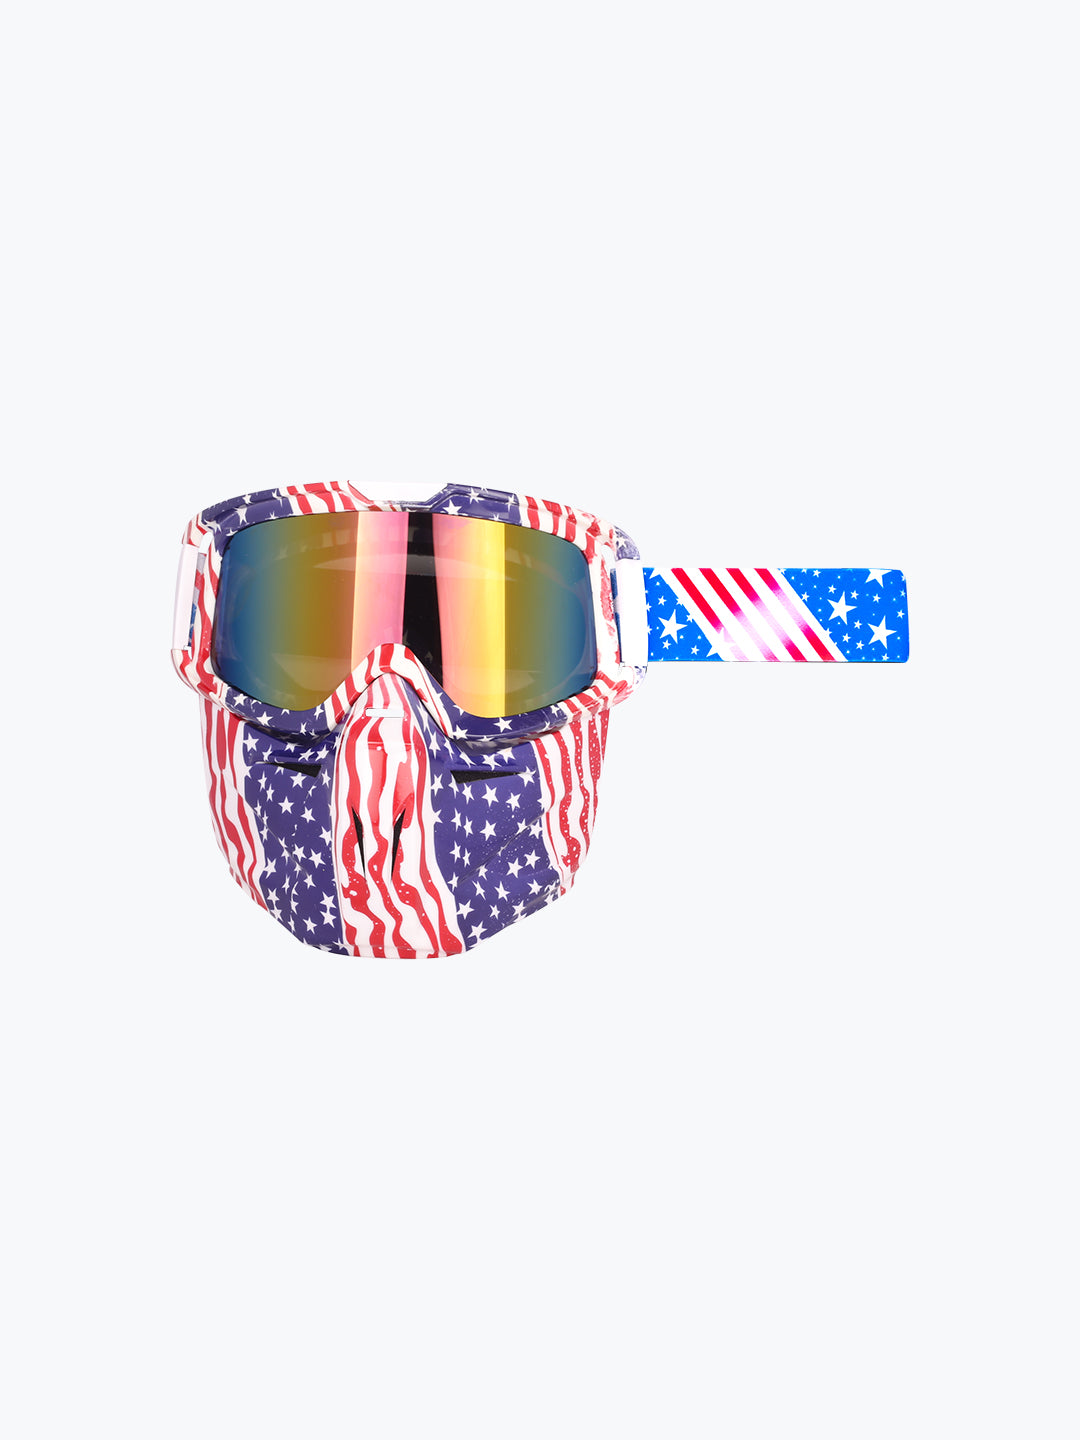 BSDDP Goggles With Mask USA Flag